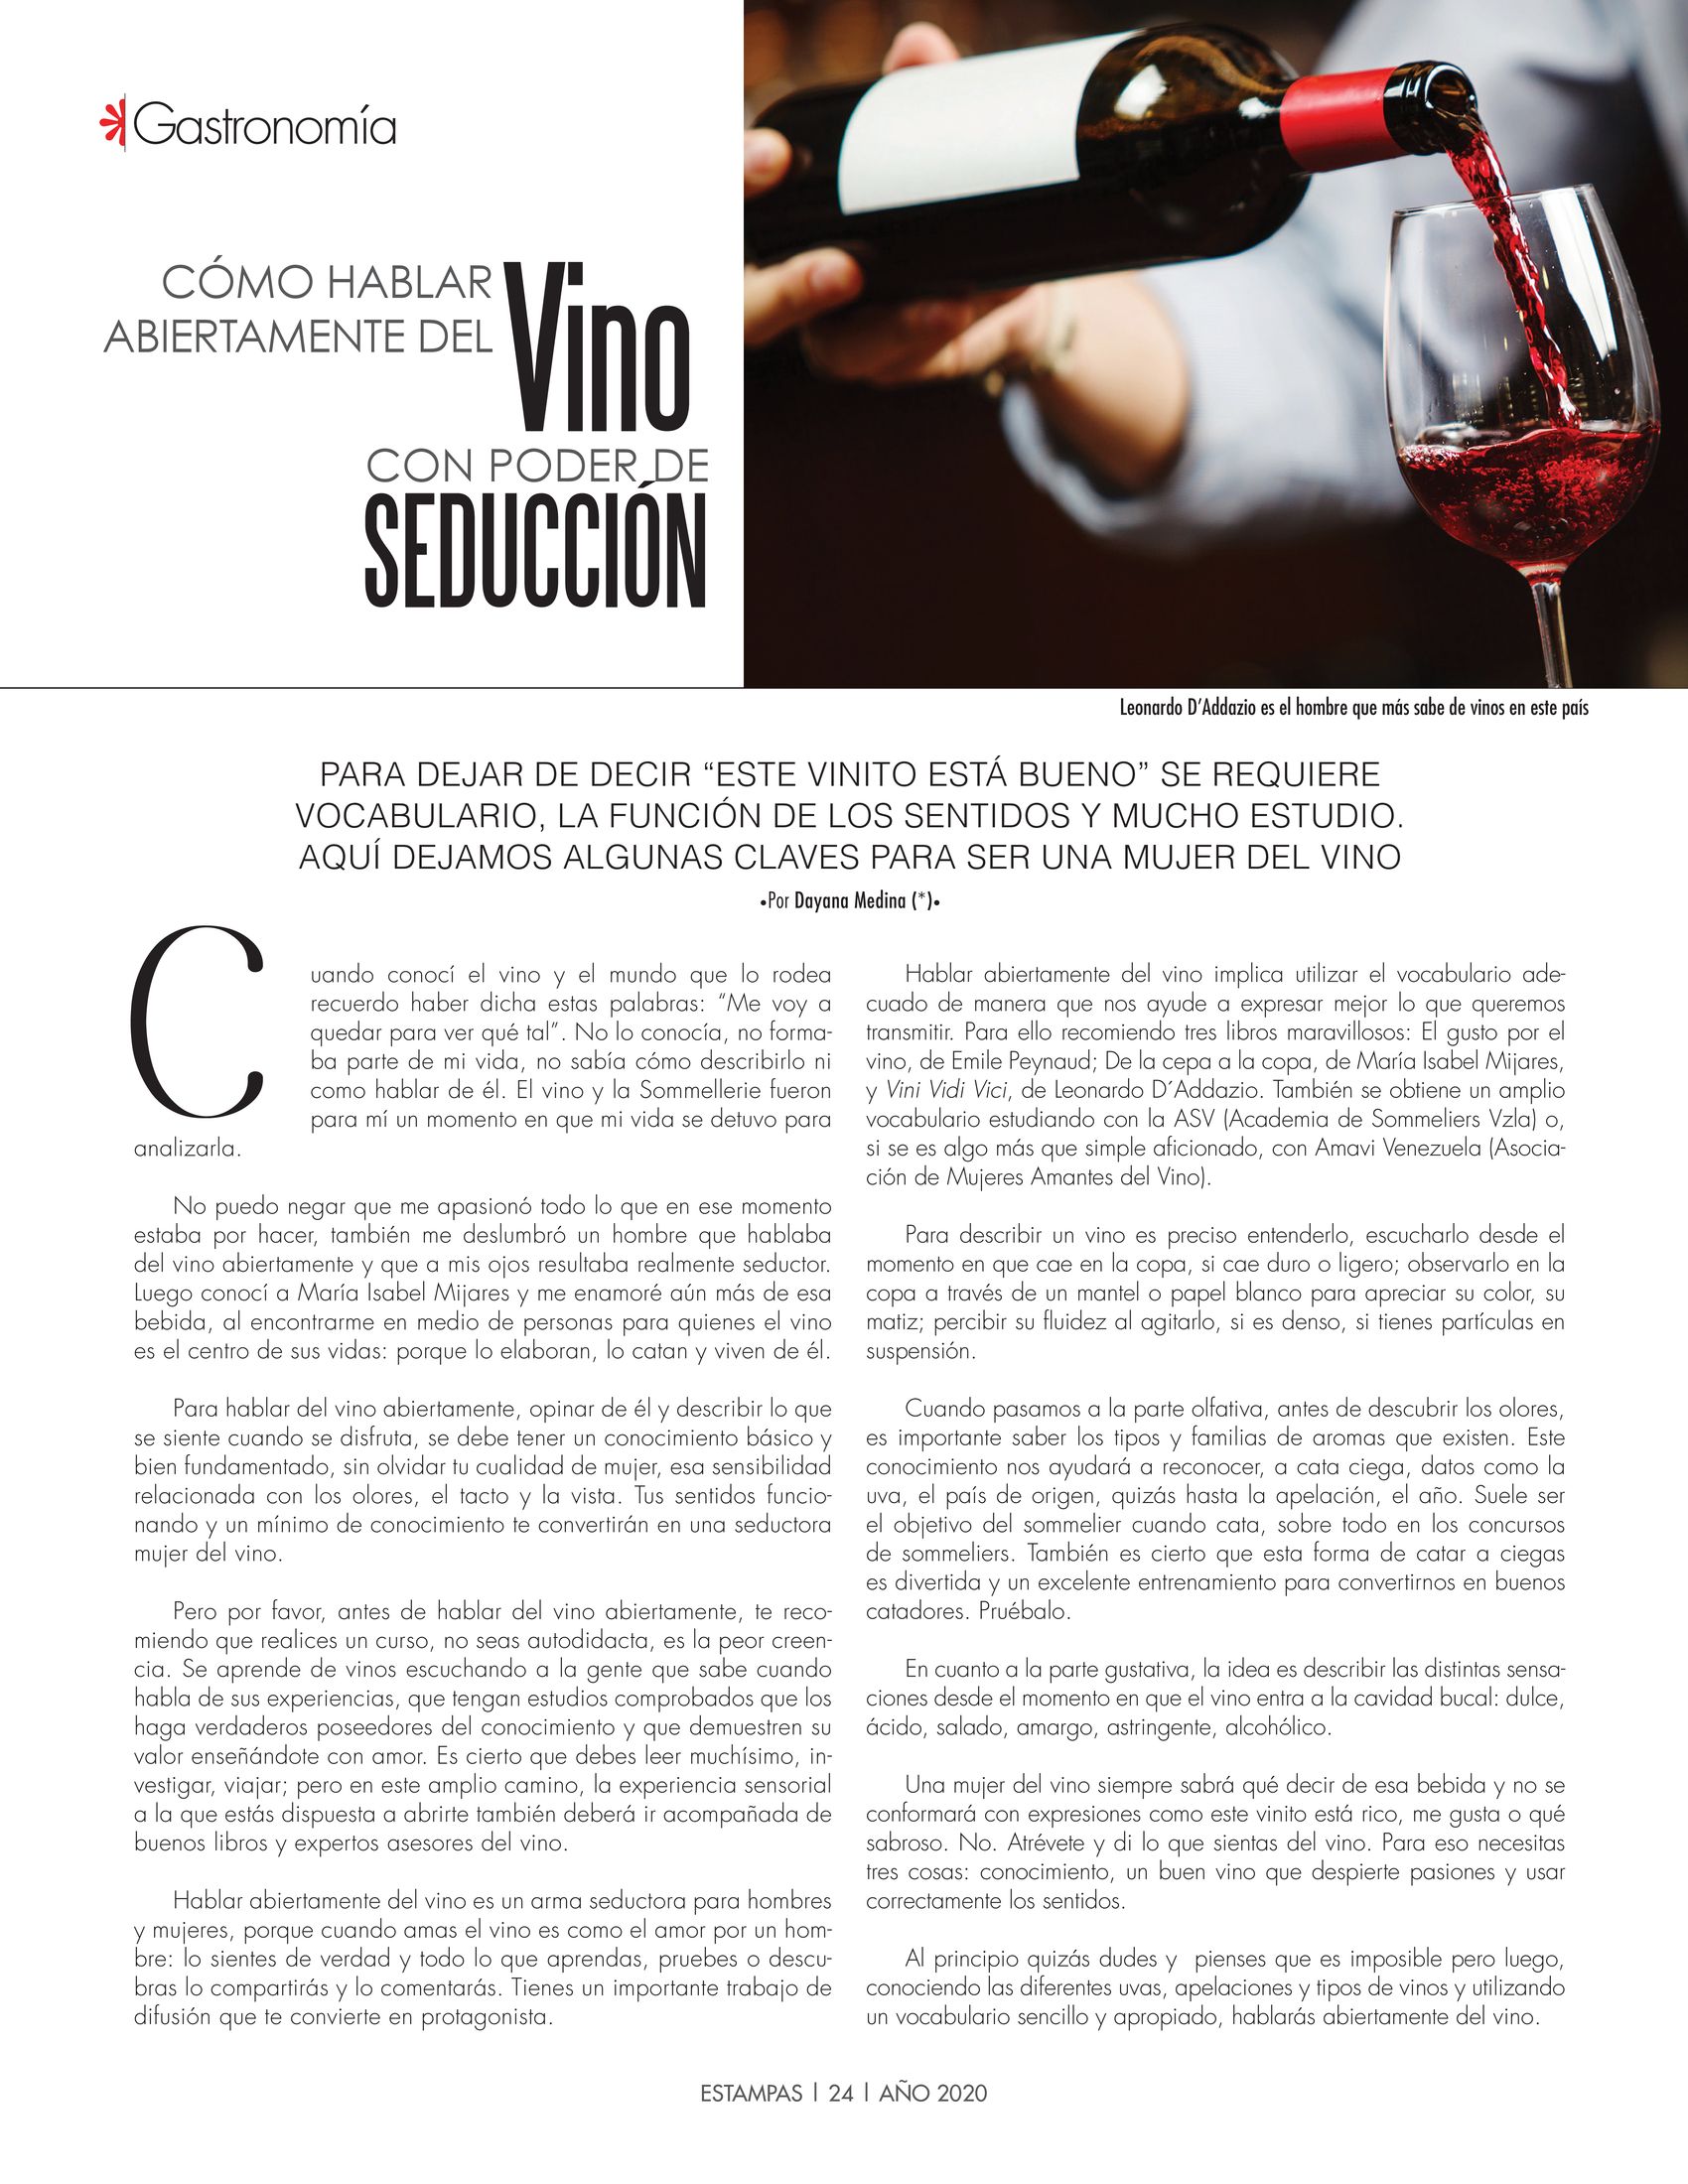 23-REV Gastronomía Dayana Medina Cómo hablar abiertamente del vino con poder de seducción